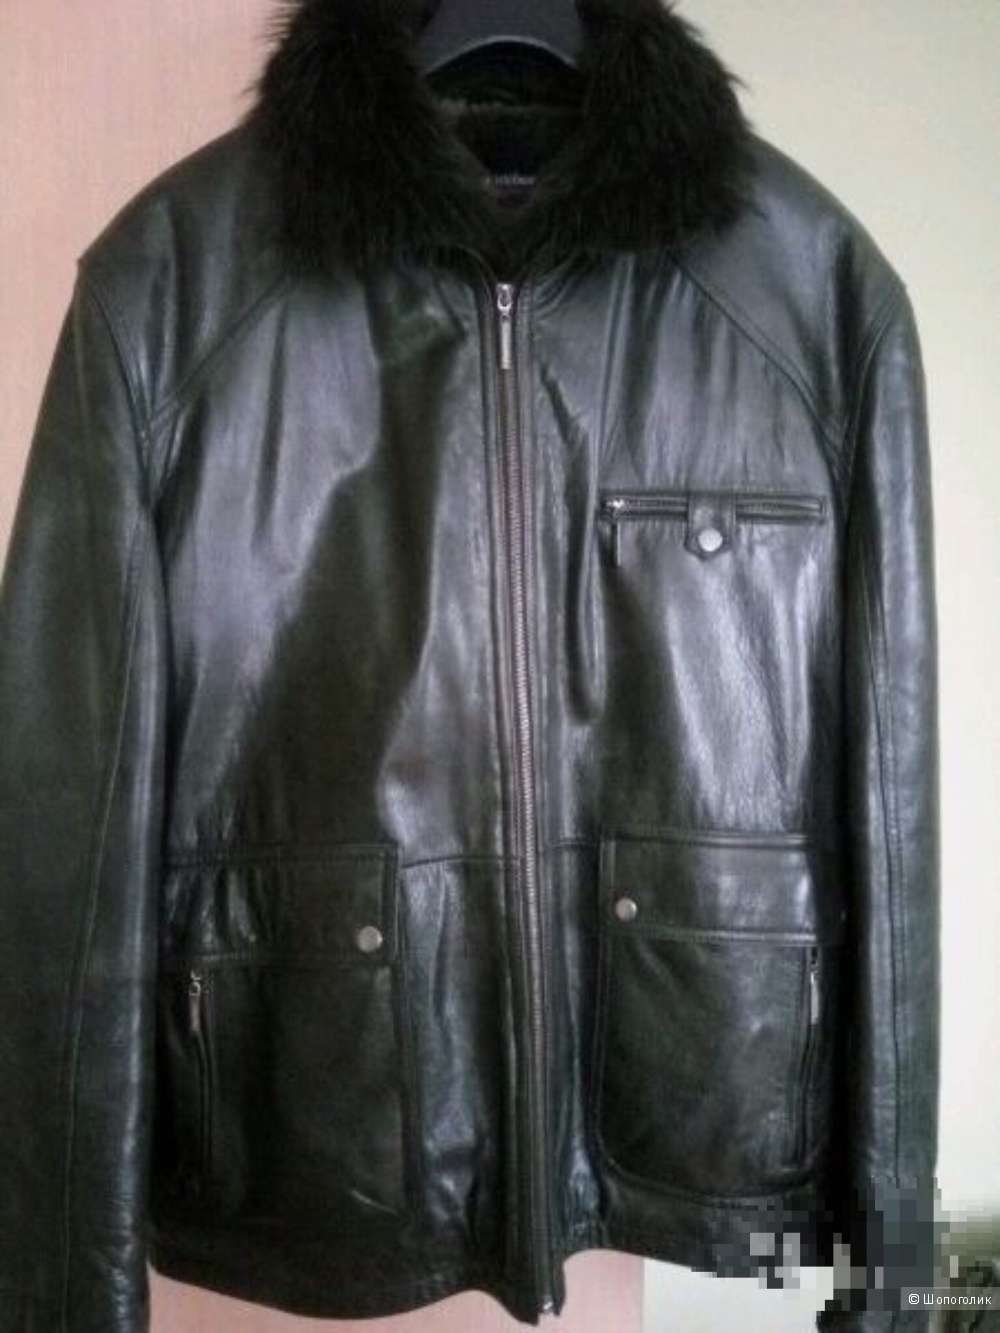 Зимняя кожаная куртка Jorg Weber, размер 54-56